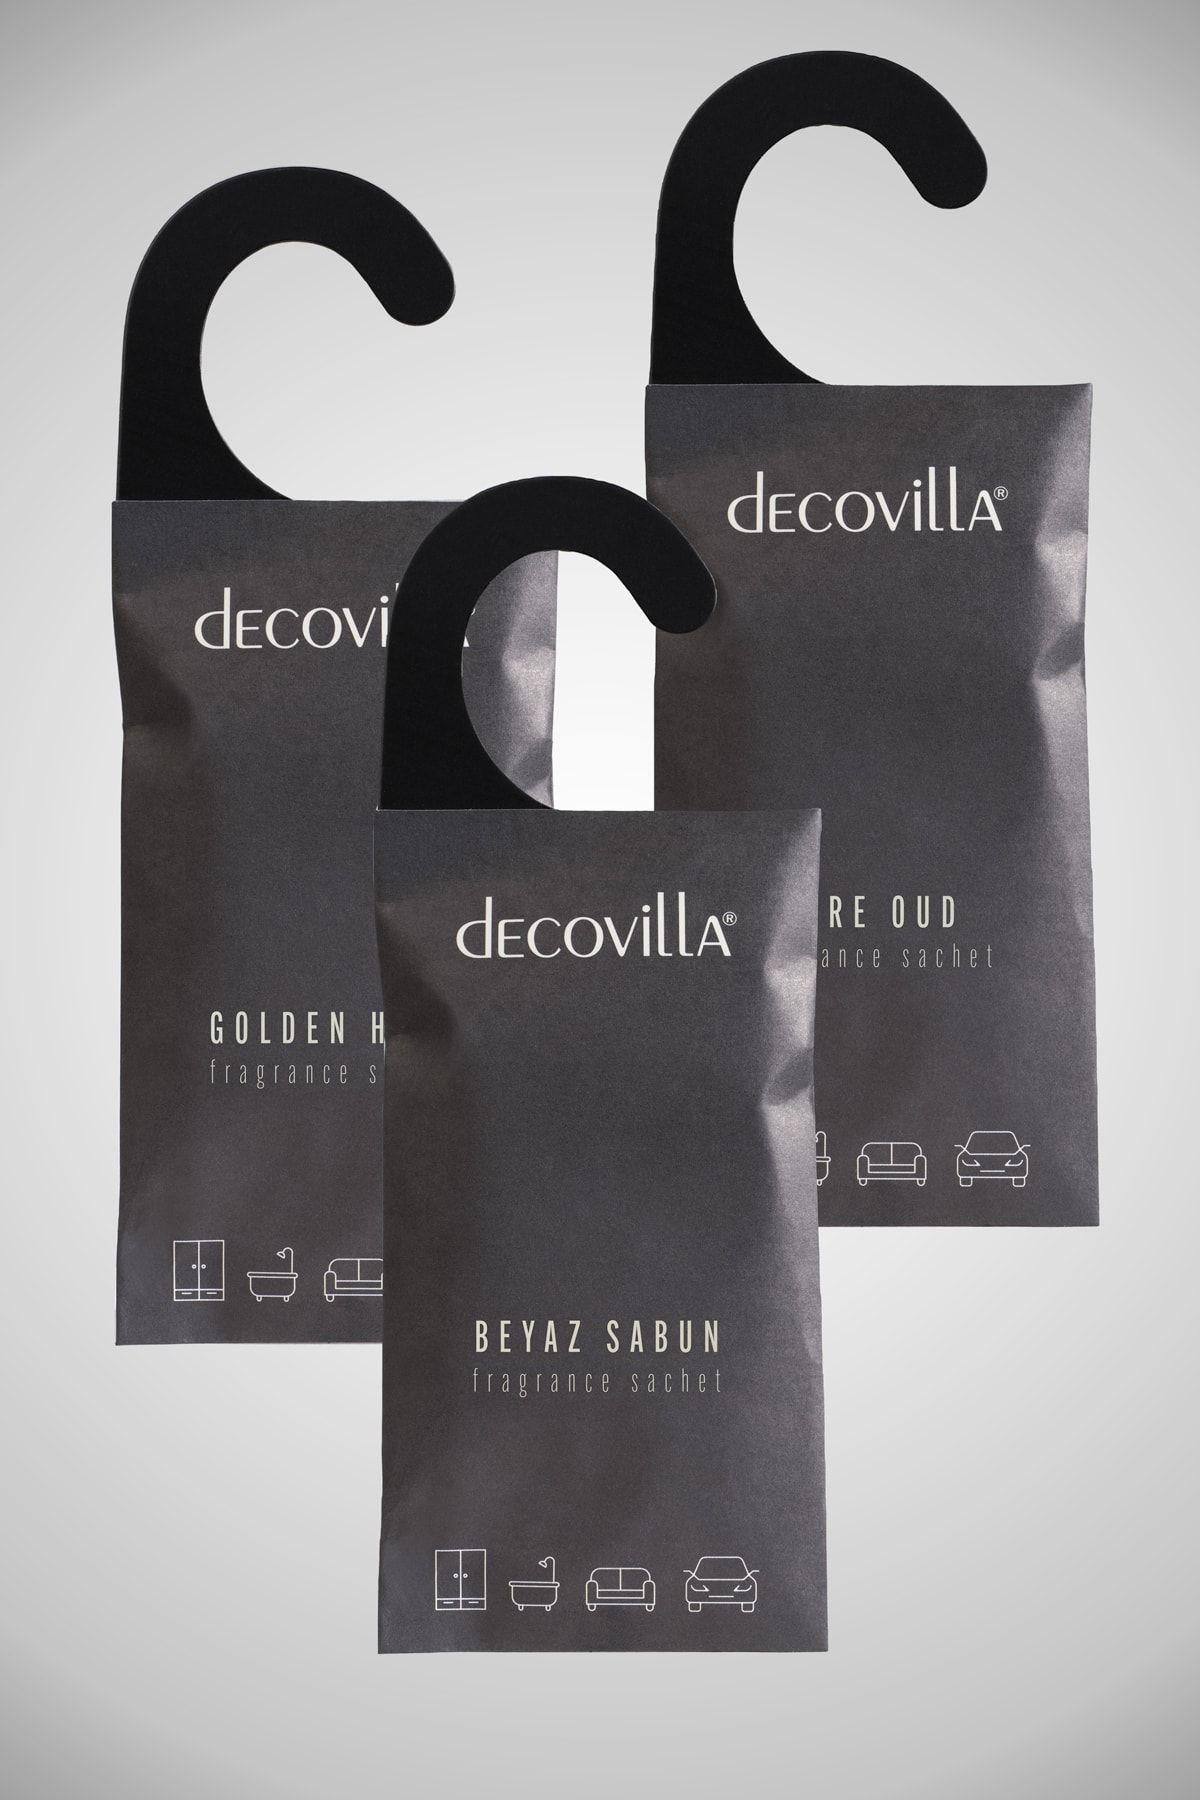 Decovilla 3 Adet Beyaz Sabun- Golden Hour- Bare Oud Dolap Çekmece Araba Koku Kesesi 3'lü Paket